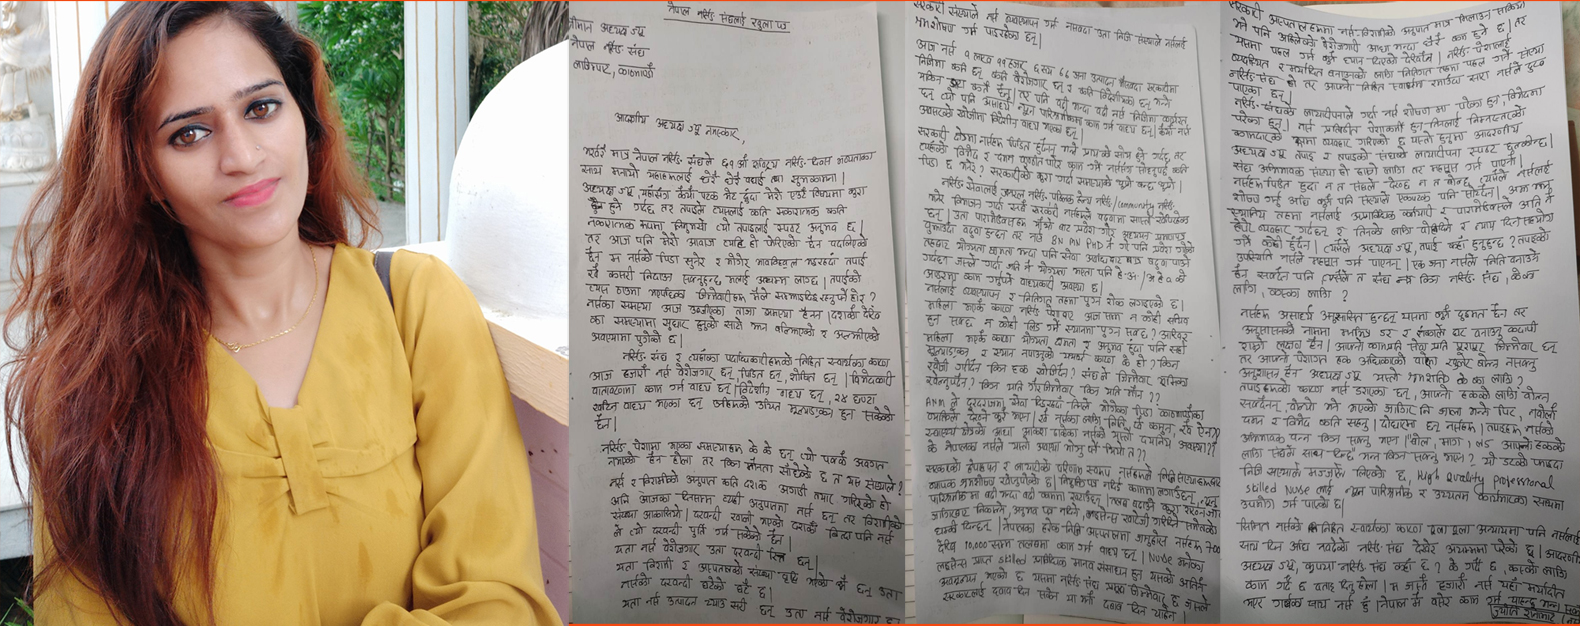 नर्सको खुला पत्र- नेपाल नर्सिङ संघ अभिभावक भएको महसुस गर्न पाएनौँ